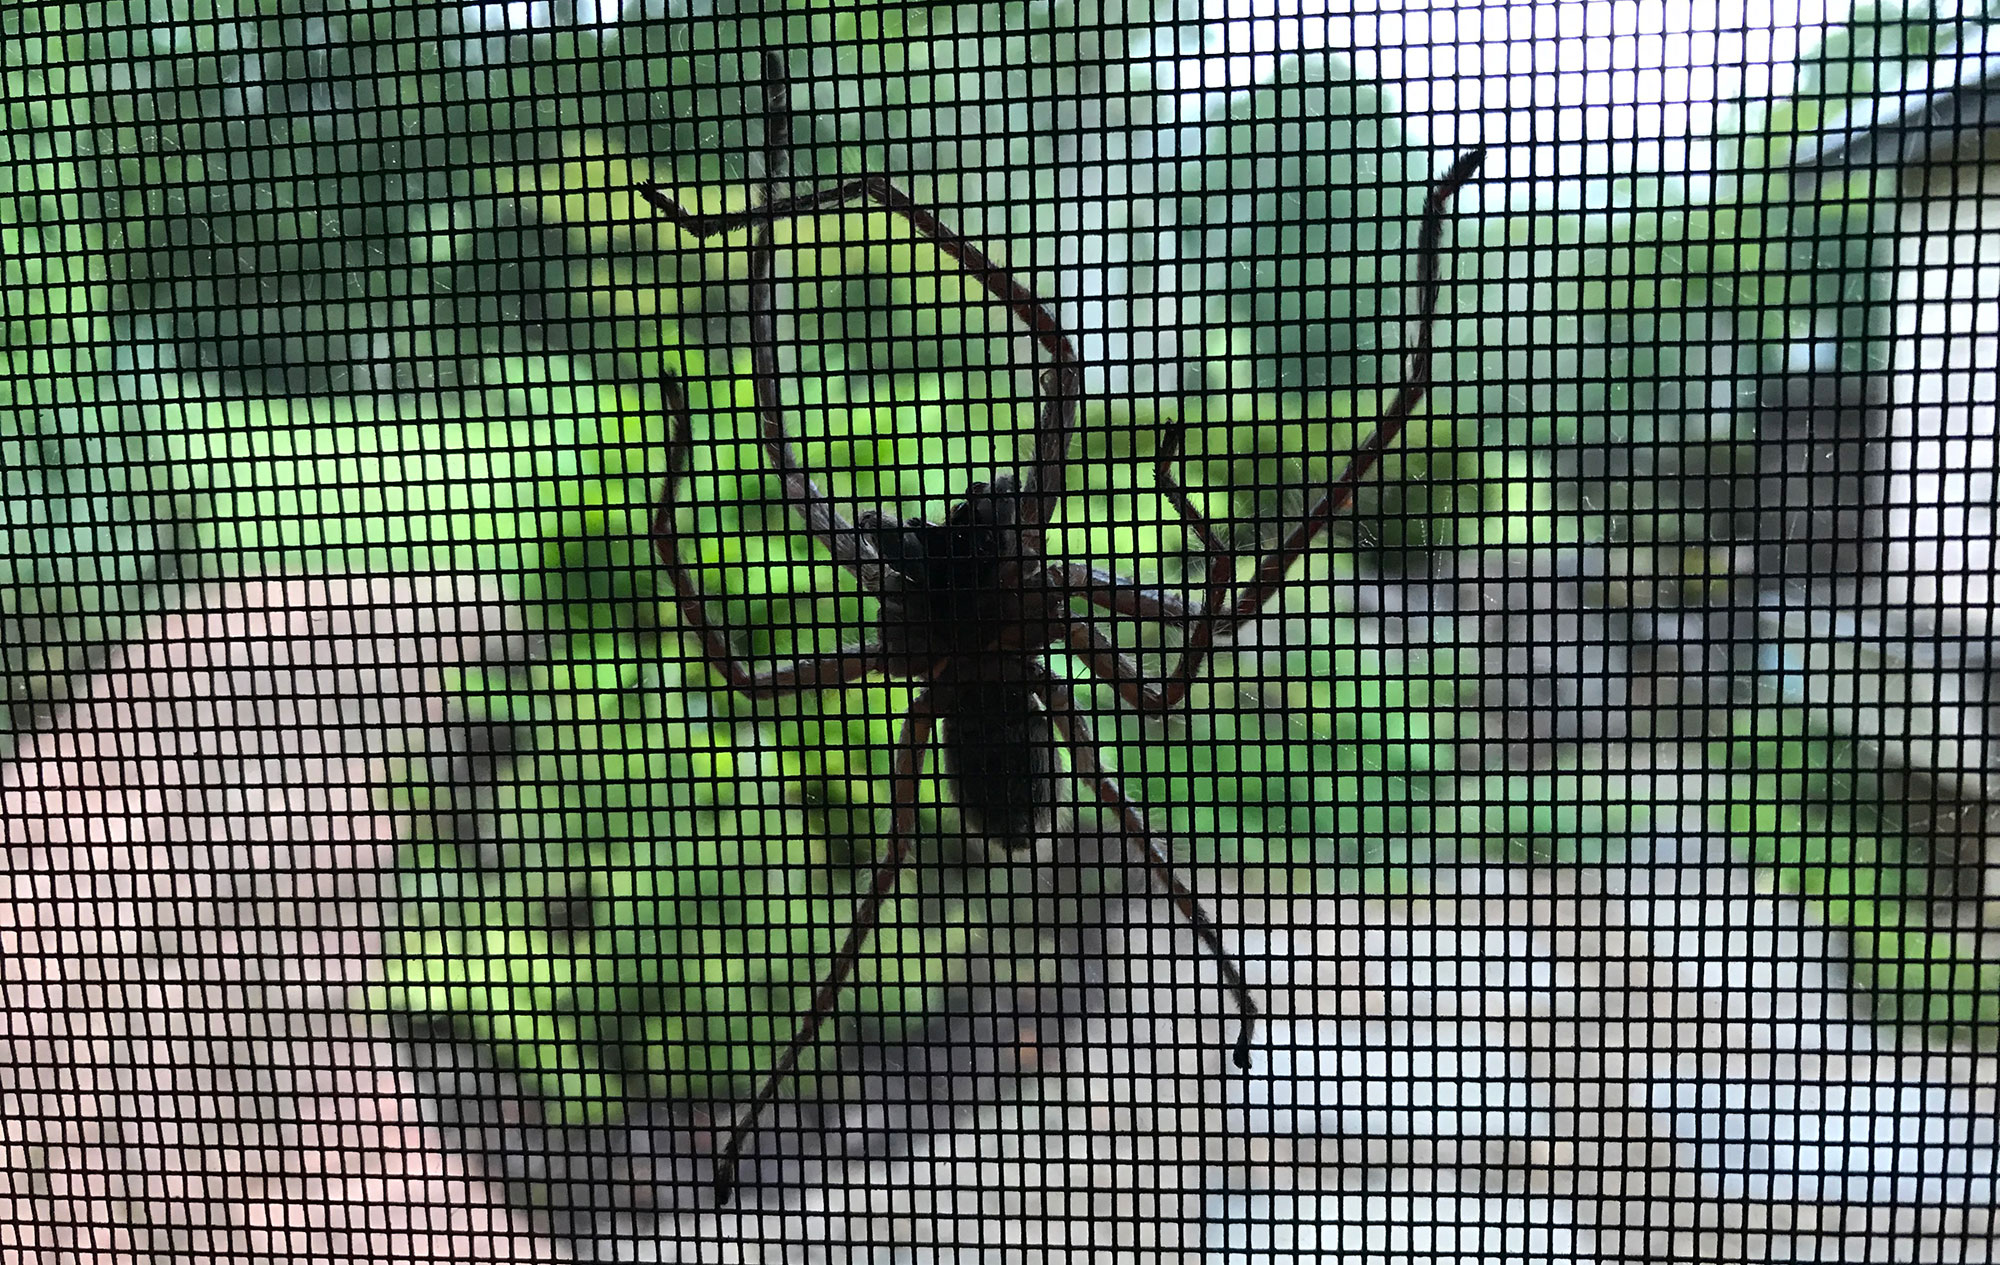 Spider in Florey